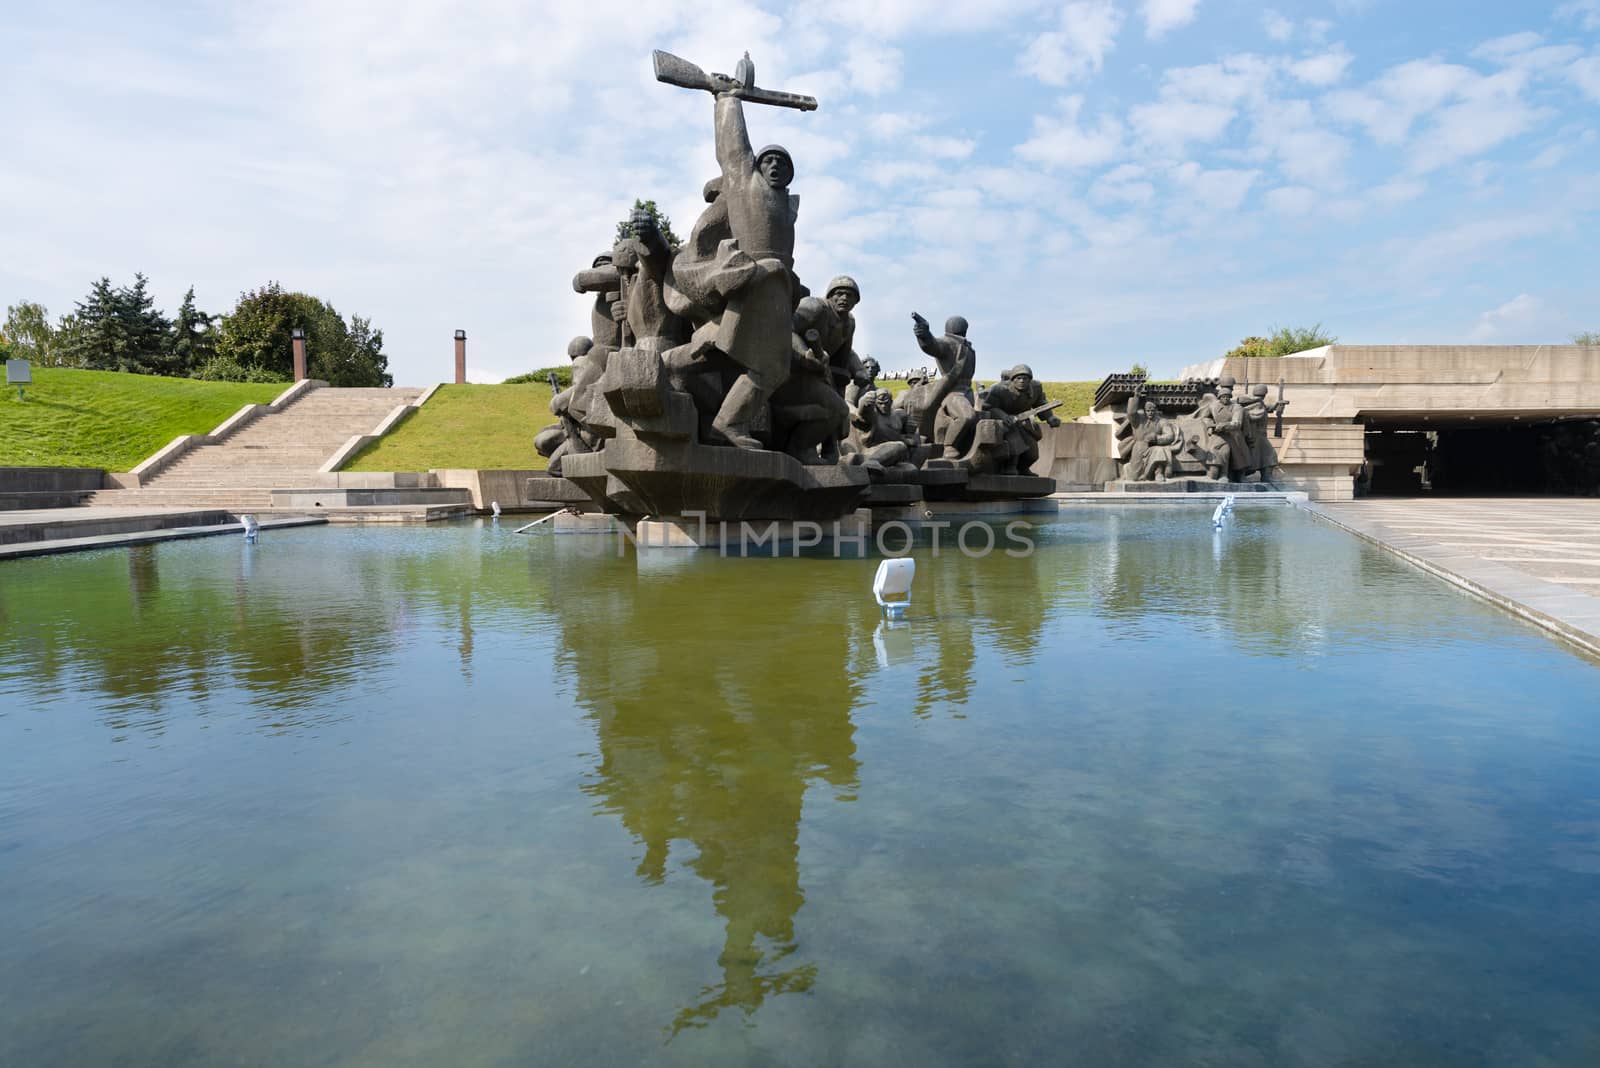 Soviet era World War II memorial in Kiev Ukraine at The Ukrainian State Museum of the Great Patriotic War. 